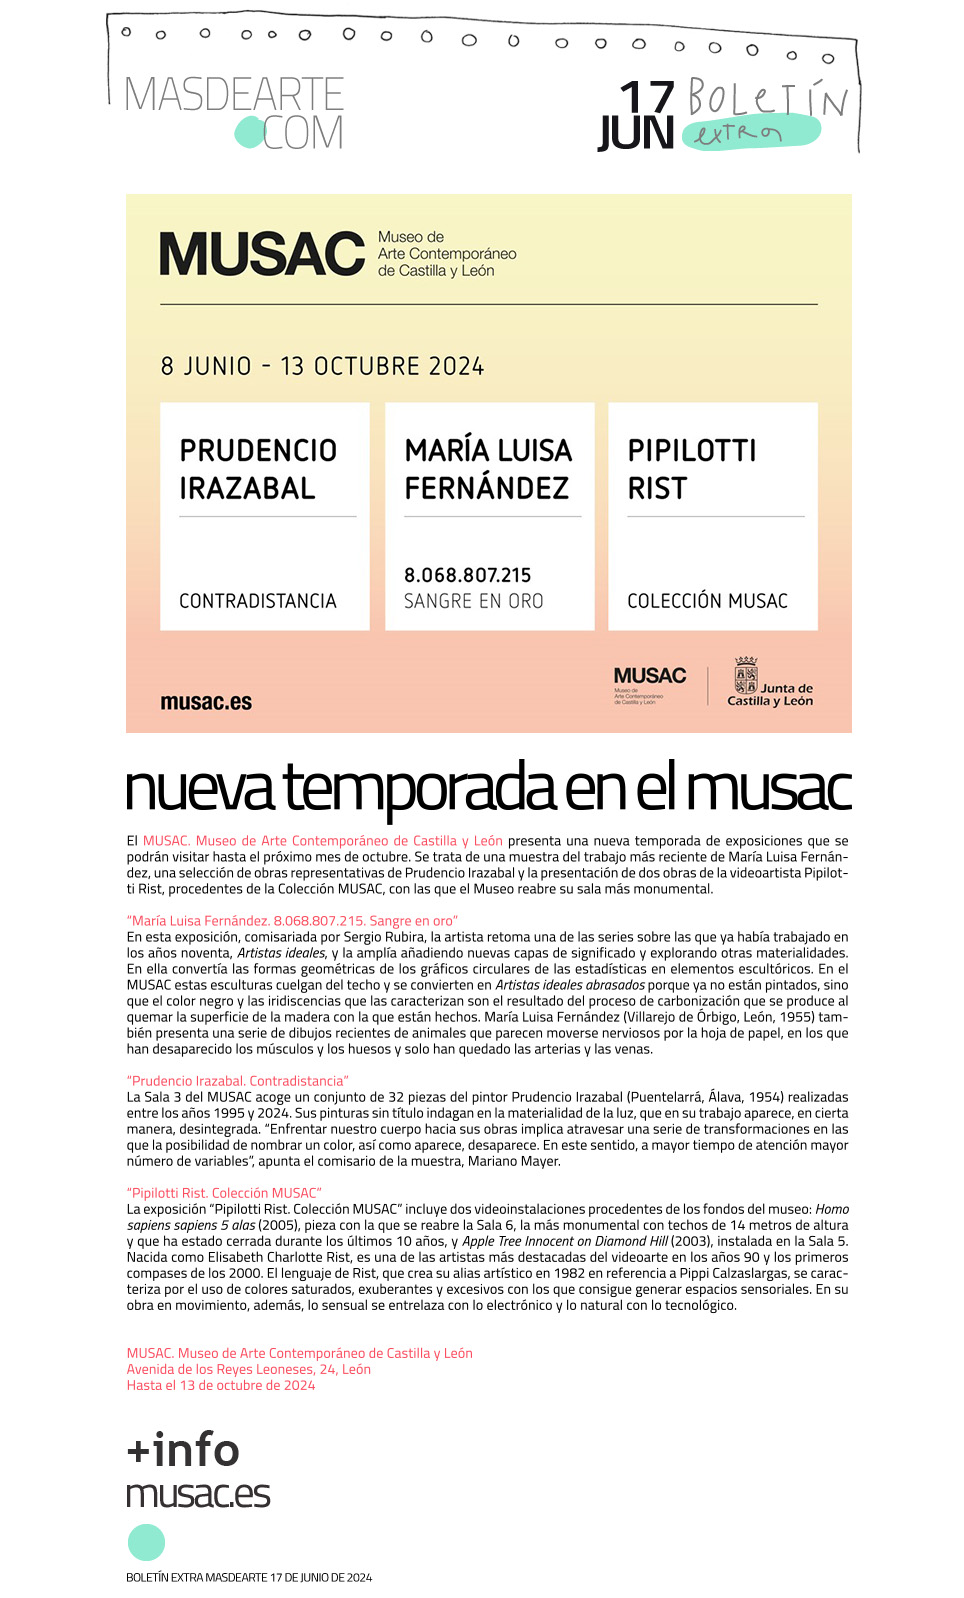 El MUSAC presenta su programación estival, con exposiciones de María Luisa Fernández, Prudencio Irazabal y Pipilotti Rist, y reabre su sala más monumental